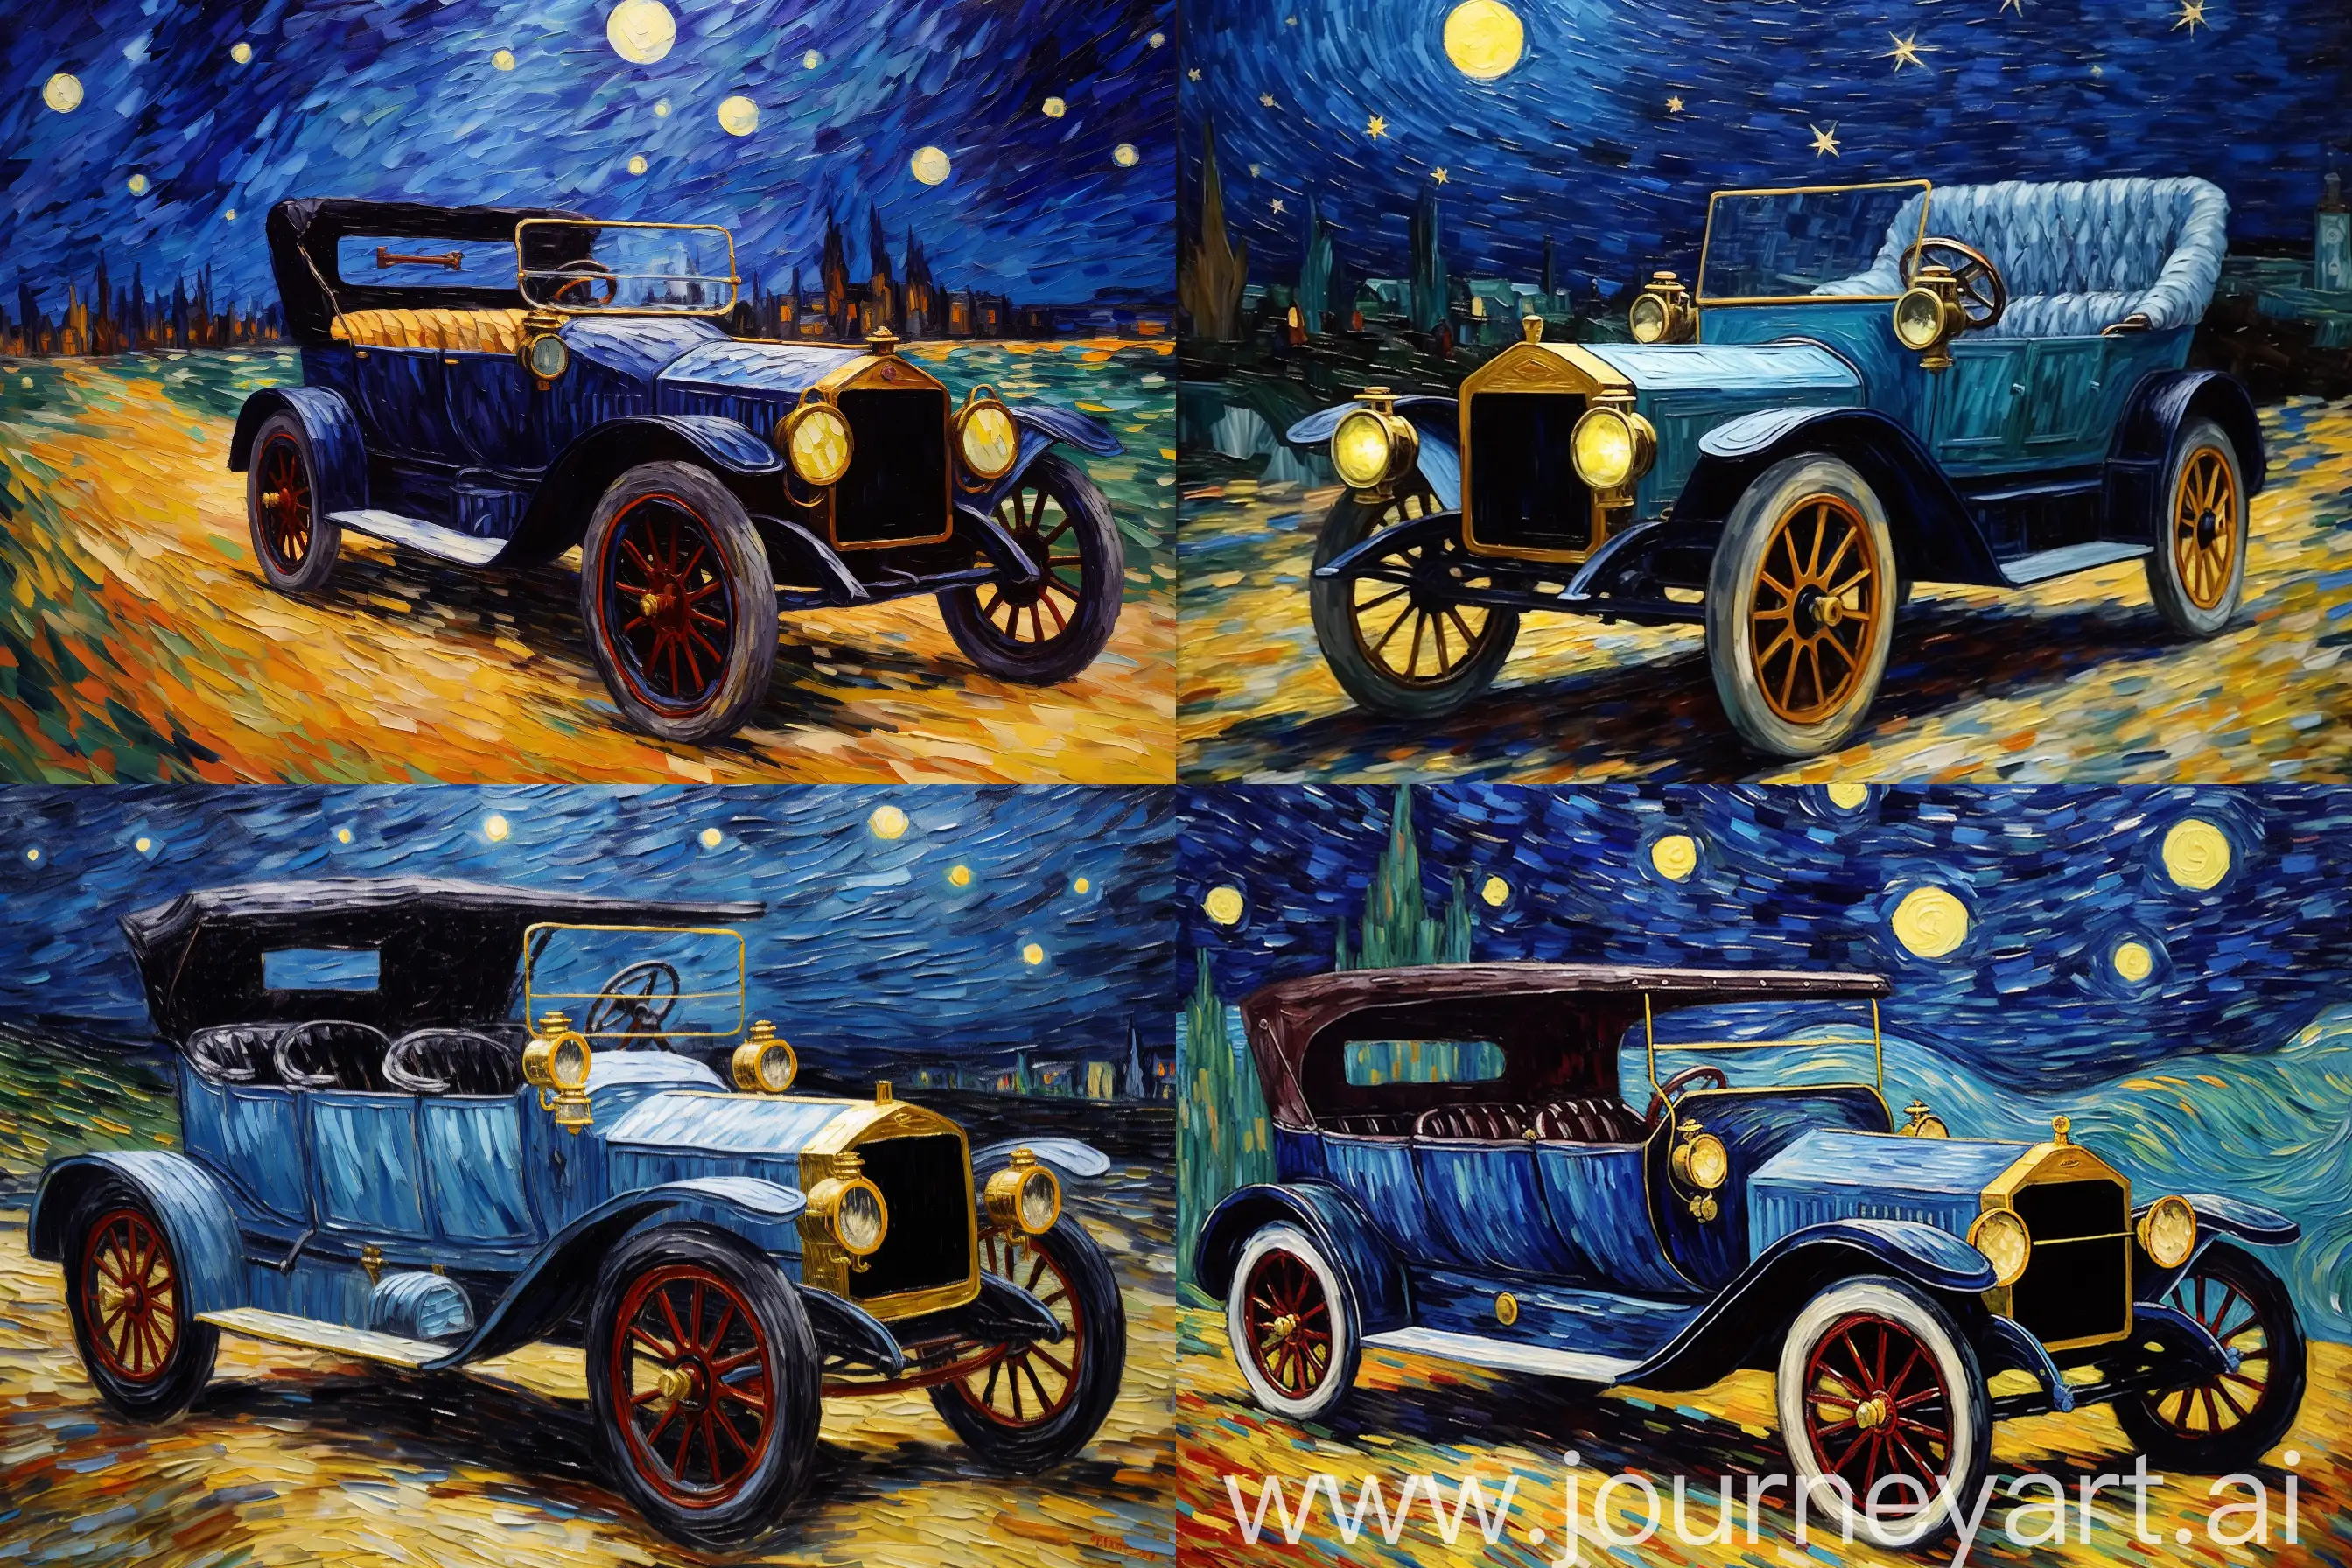 Vintage-1910-Car-Painting-Under-Starry-Night-Sky-by-Van-Gogh